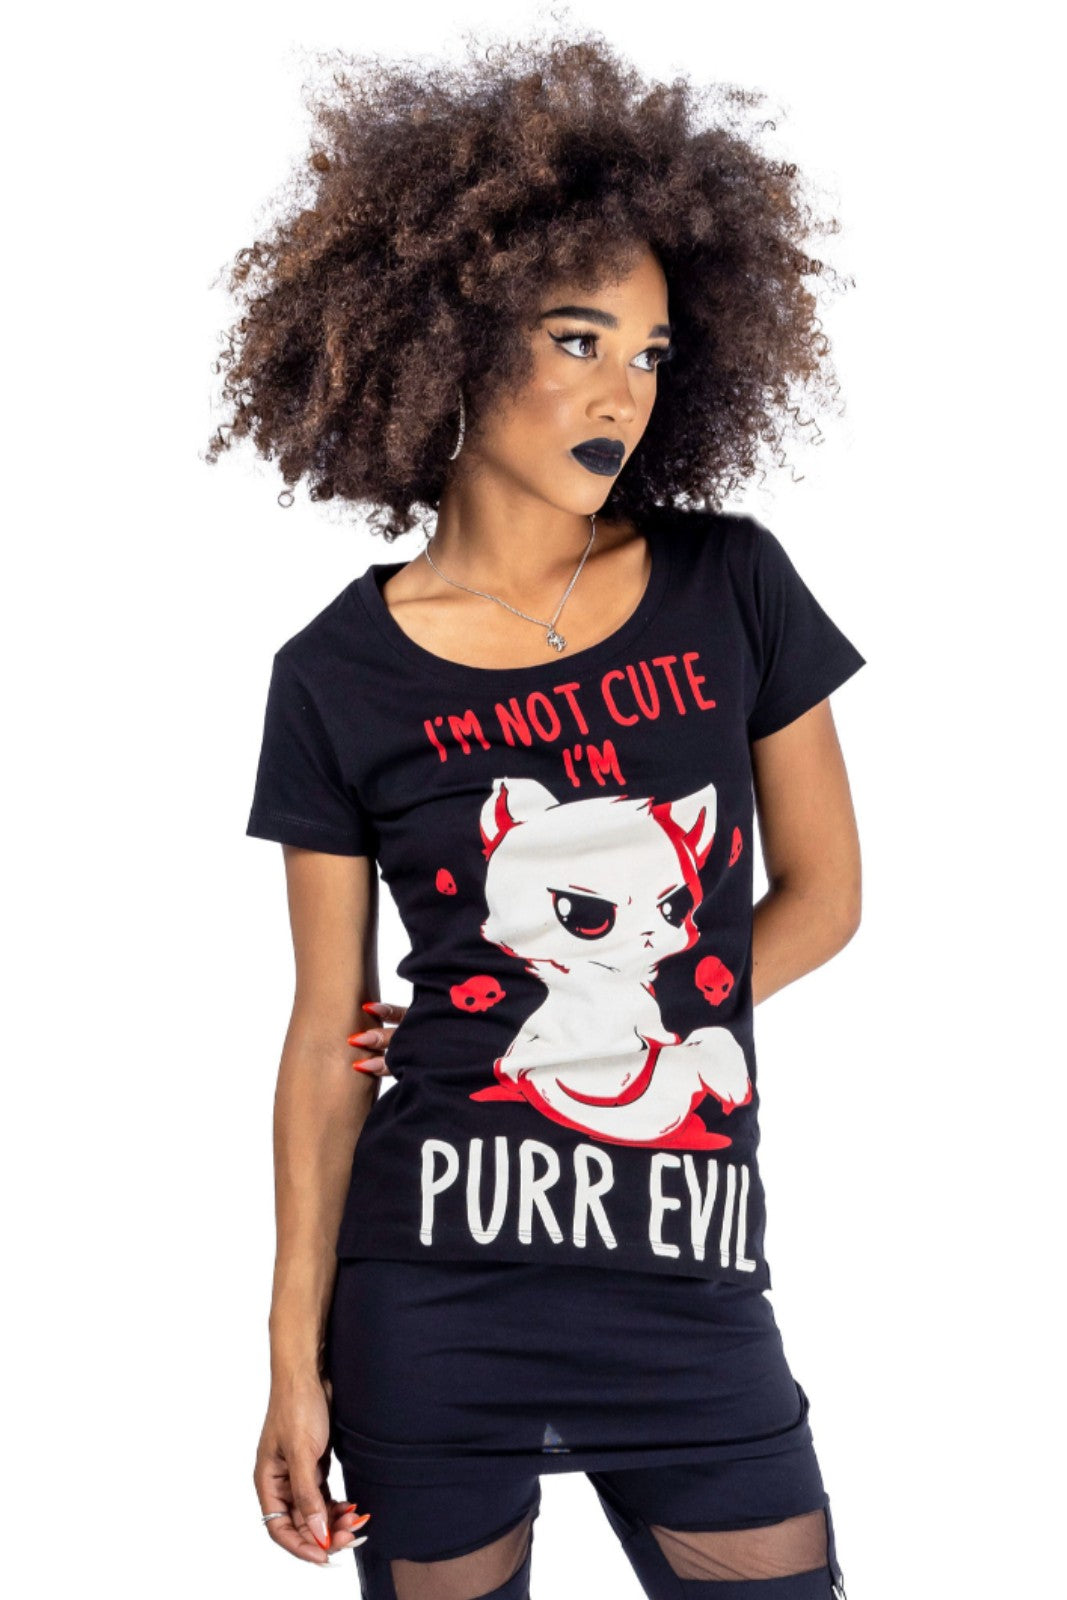 Cupcake Cult Purr Evil Goth Punk T-shirt